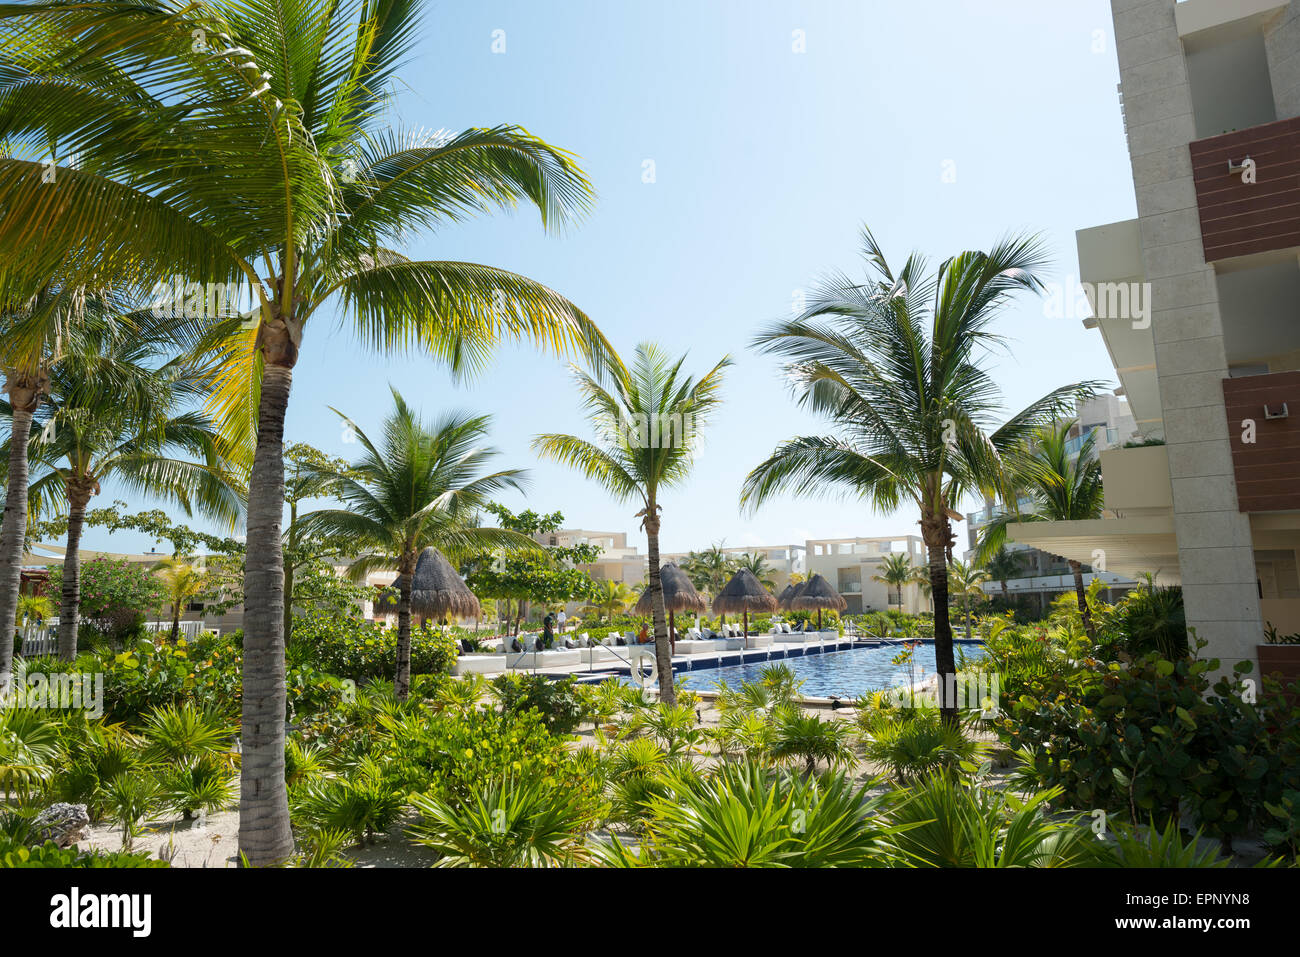 L amata Hotel Playa Mujeres, Messico, si trova appena a nord di Cancun. Si tratta di un lusso all-inclusive beach resort di proprietà del gruppo di eccellenza. Foto Stock